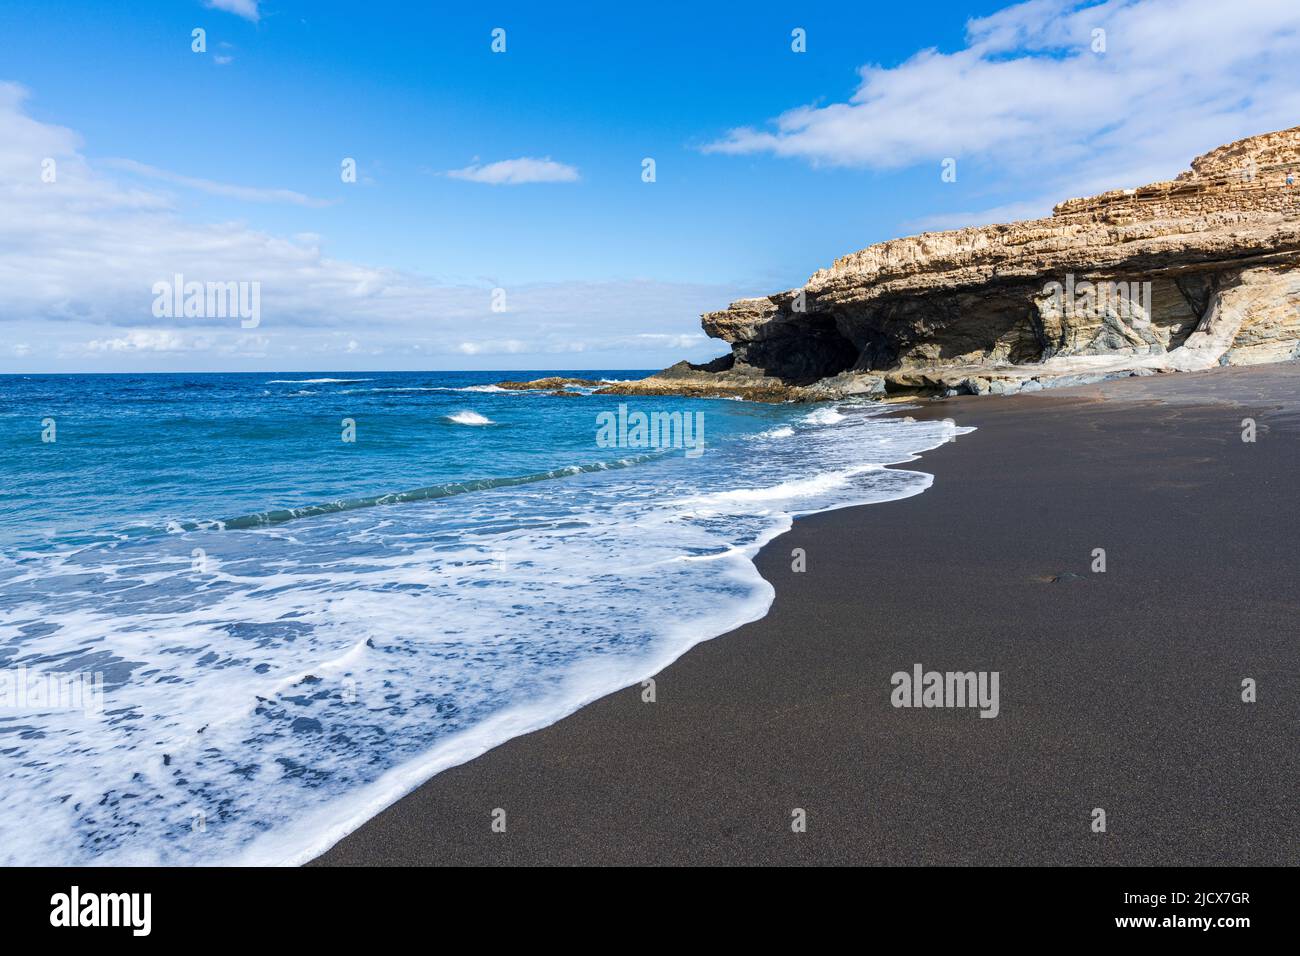 Vagues s'écrasant sur des falaises à la plage volcanique d'Ajuy, Fuerteventura, îles Canaries, Espagne, Atlantique, Europe Banque D'Images